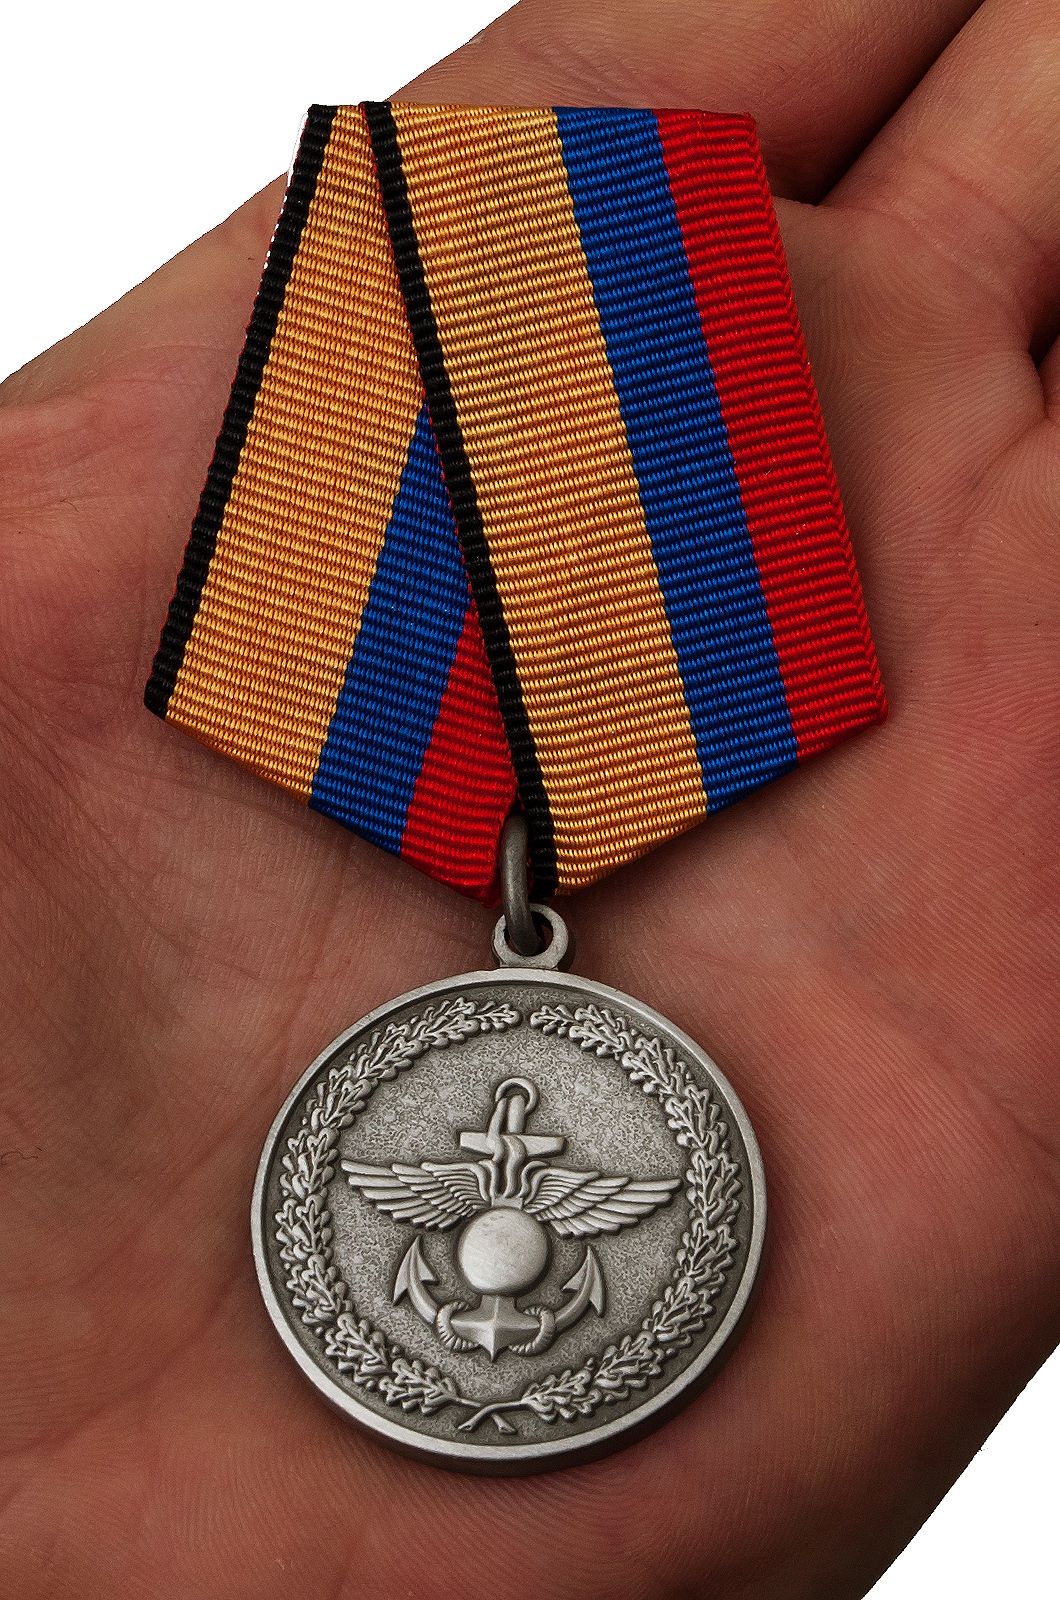 Медаль «За отличие в учениях» МО РФ 